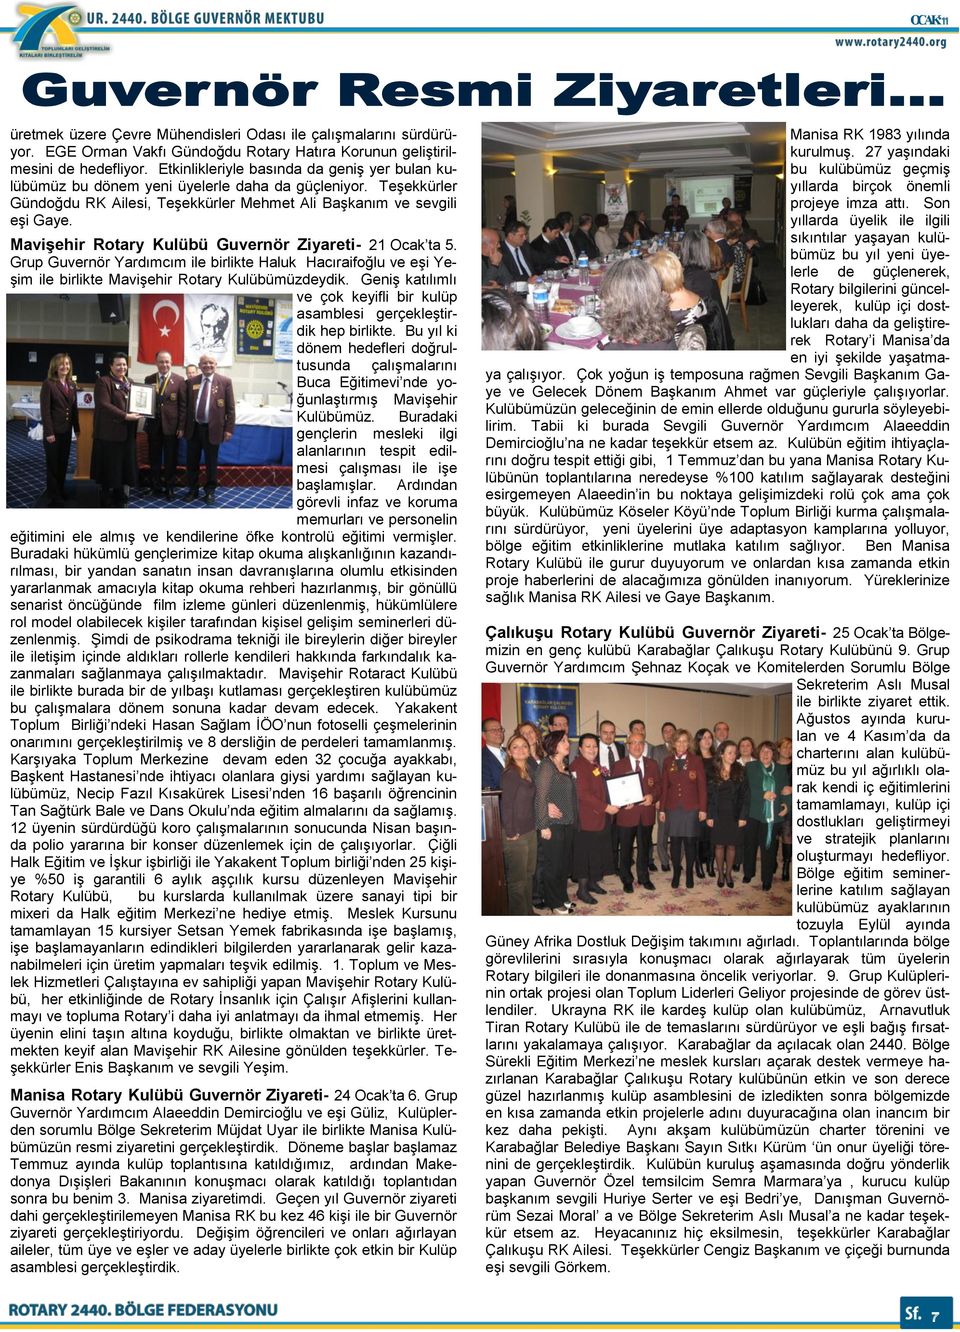 Mavişehir Rotary Kulübü Guvernör Ziyareti- 21 Ocak ta 5. Grup Guvernör Yardımcım ile birlikte Haluk Hacıraifoğlu ve eģi Ye- Ģim ile birlikte MaviĢehir Rotary Kulübümüzdeydik.